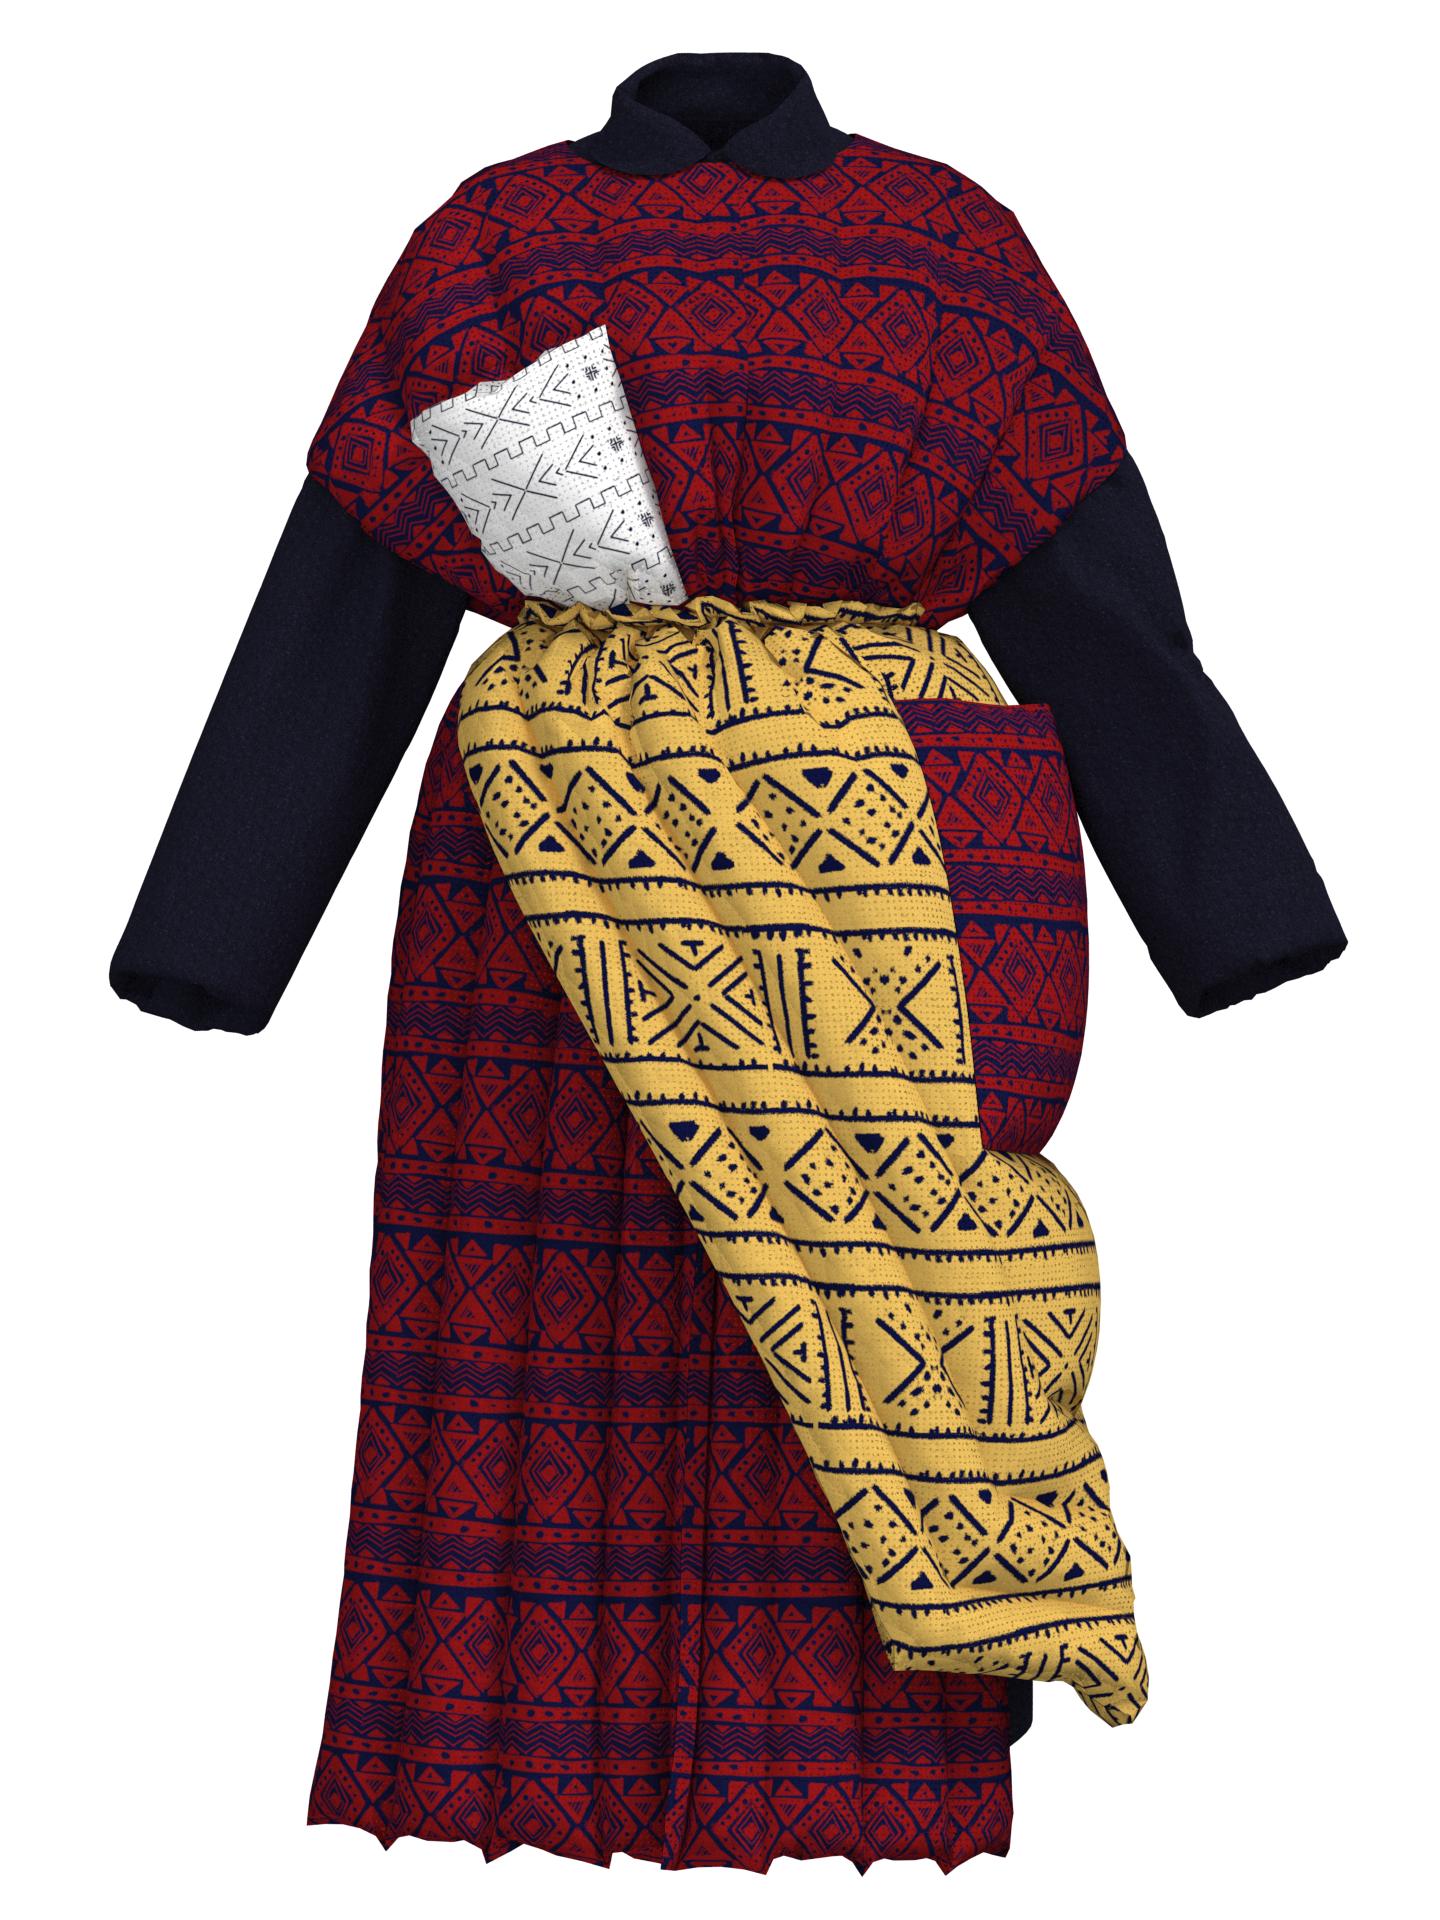 Coat with puffer skirt by IV & RUZALINA